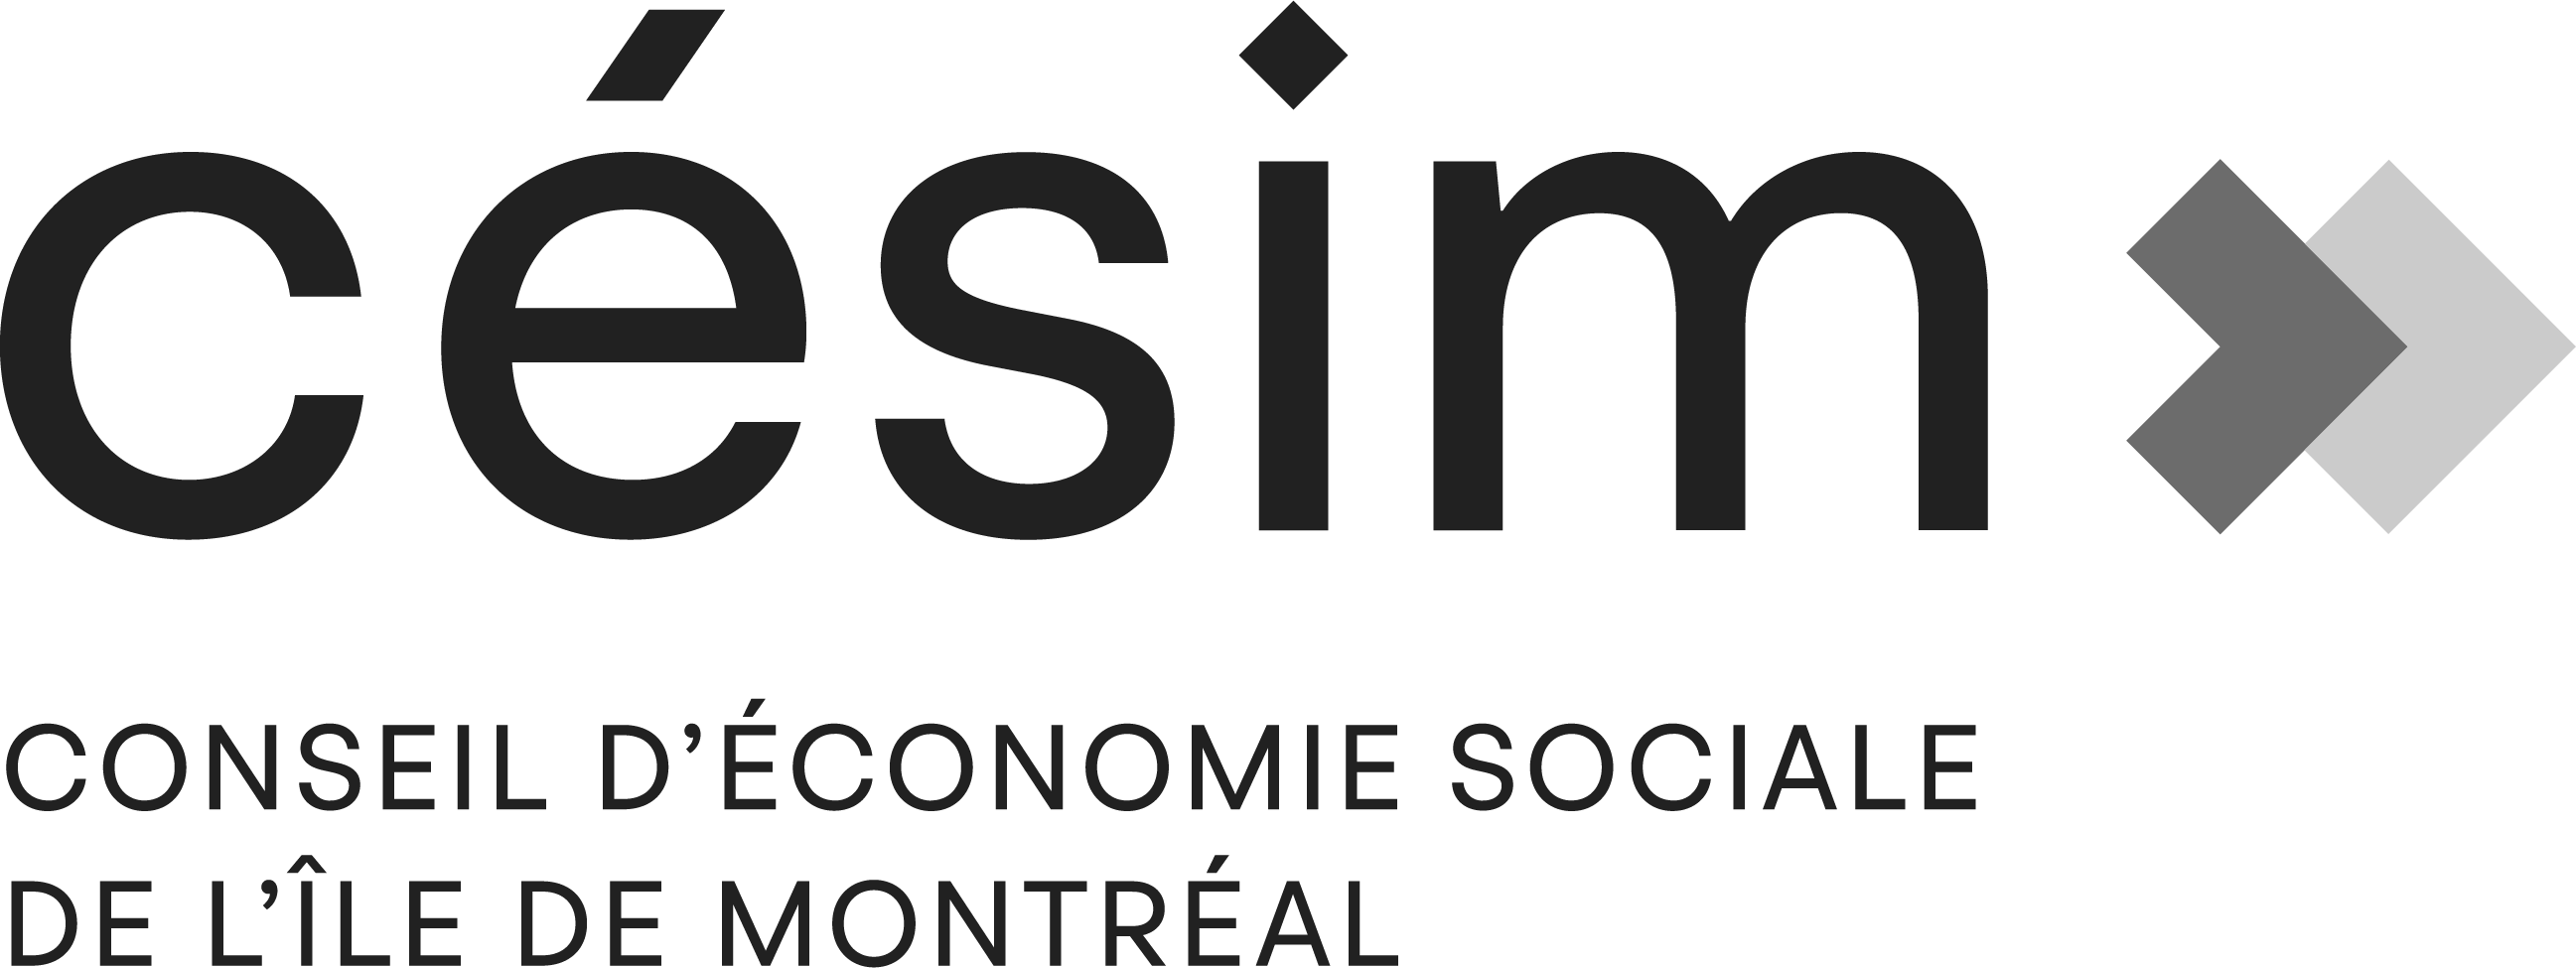 Conseil d'économie sociale de l'île de Montréal logo